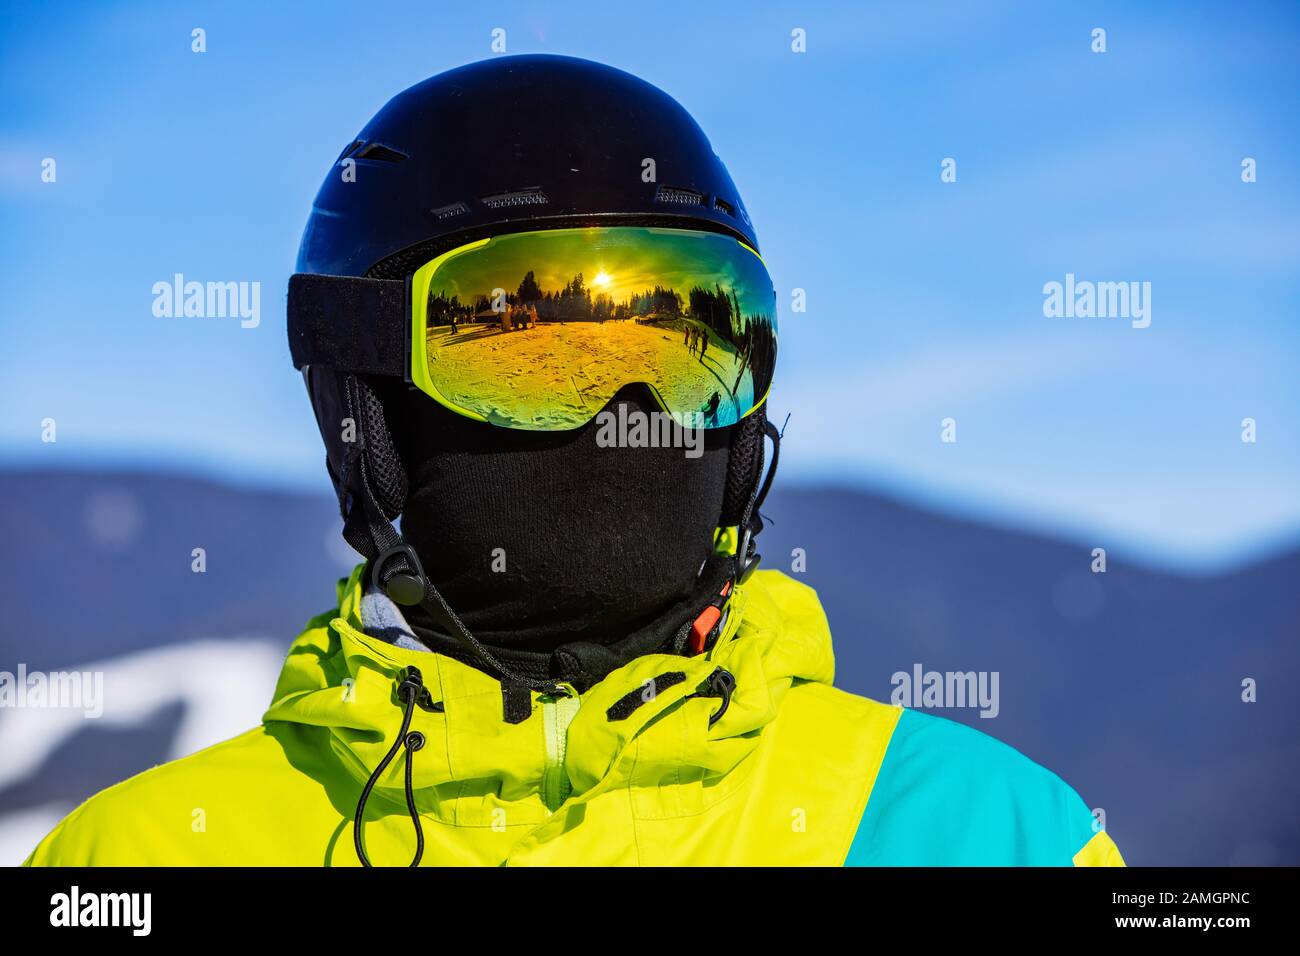 https://c8.alamy.com/compit/2amgpnc/uomo-in-maschera-di-snowboard-casco-e-balaclava-2amgpnc.jpg